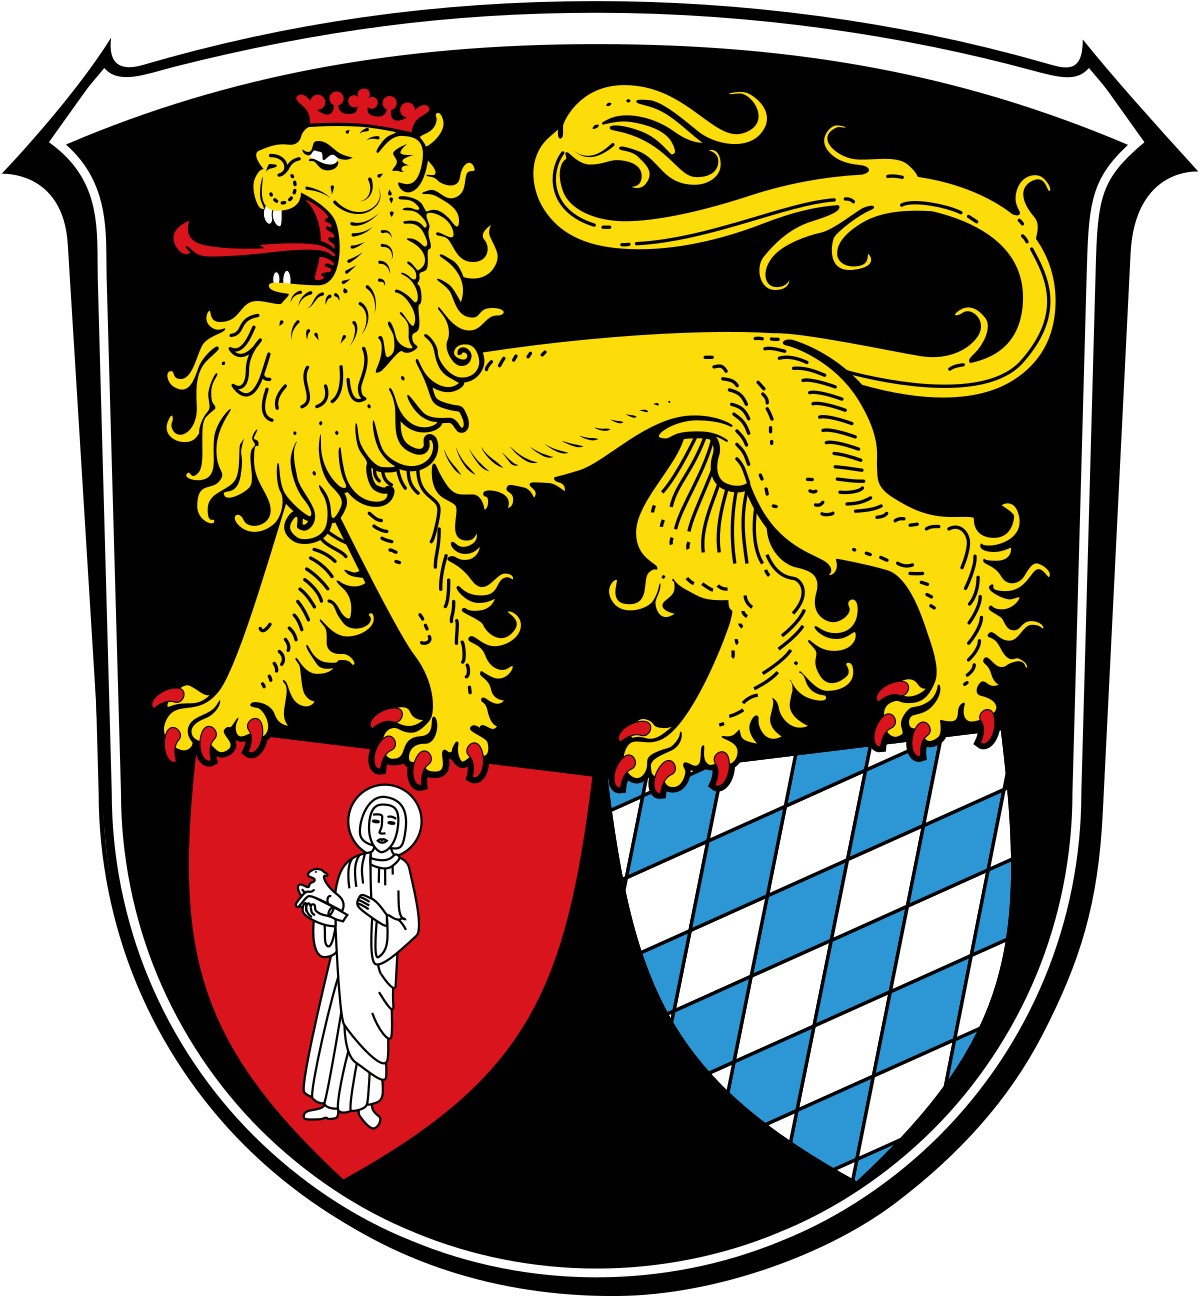 Flörsheim-Dalsheim – Wikipedia